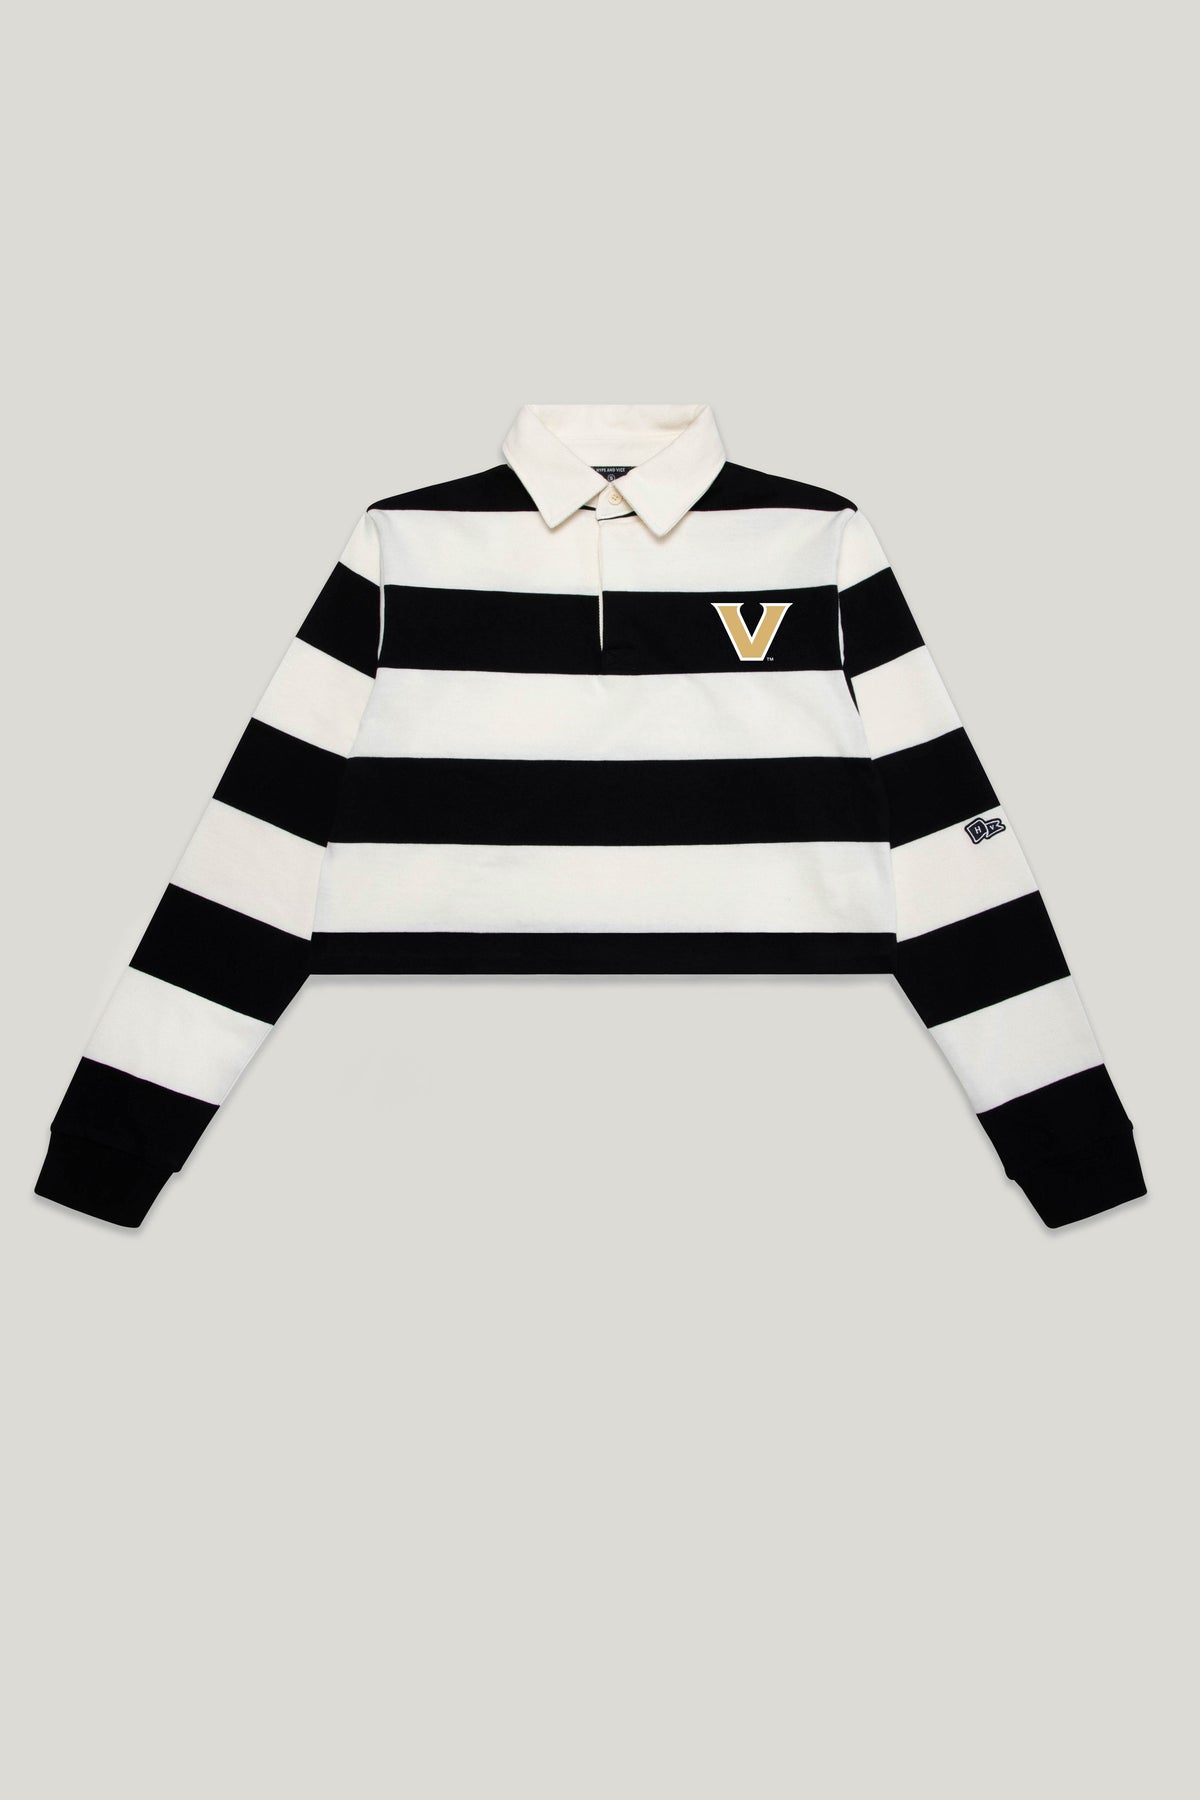 Vanderbilt Rugby Top